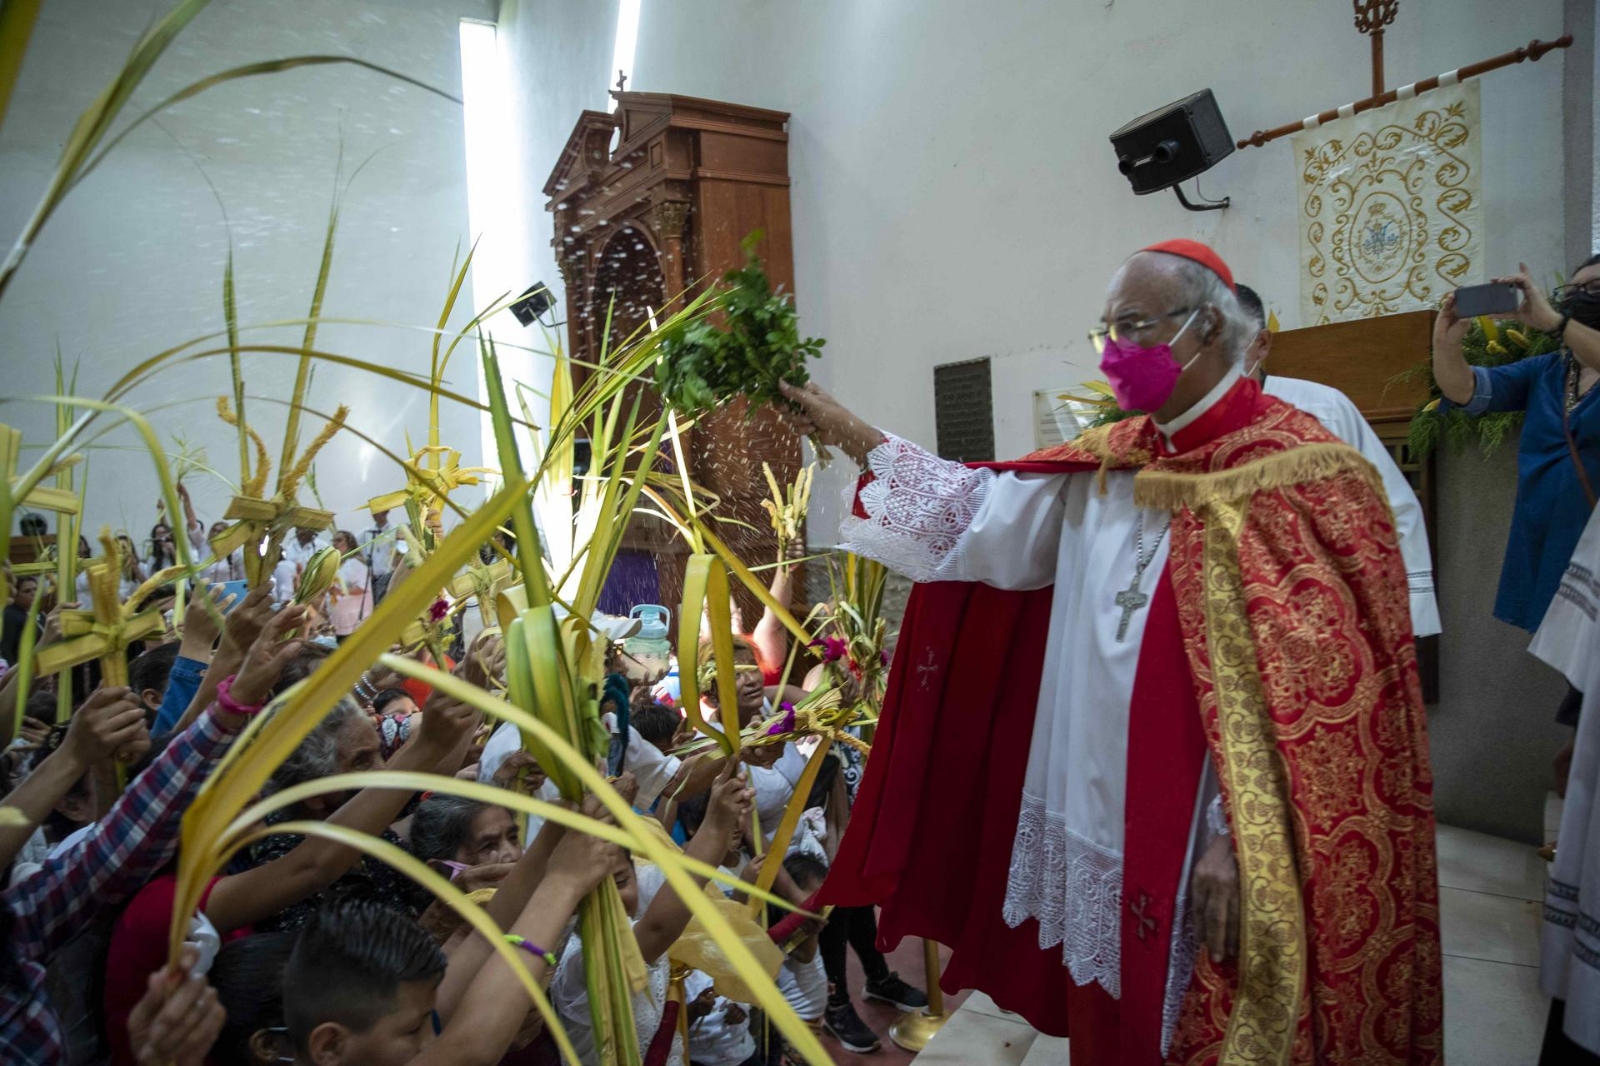 Los viacrucis y procesiones solo se podrán realizar dentro de las iglesias